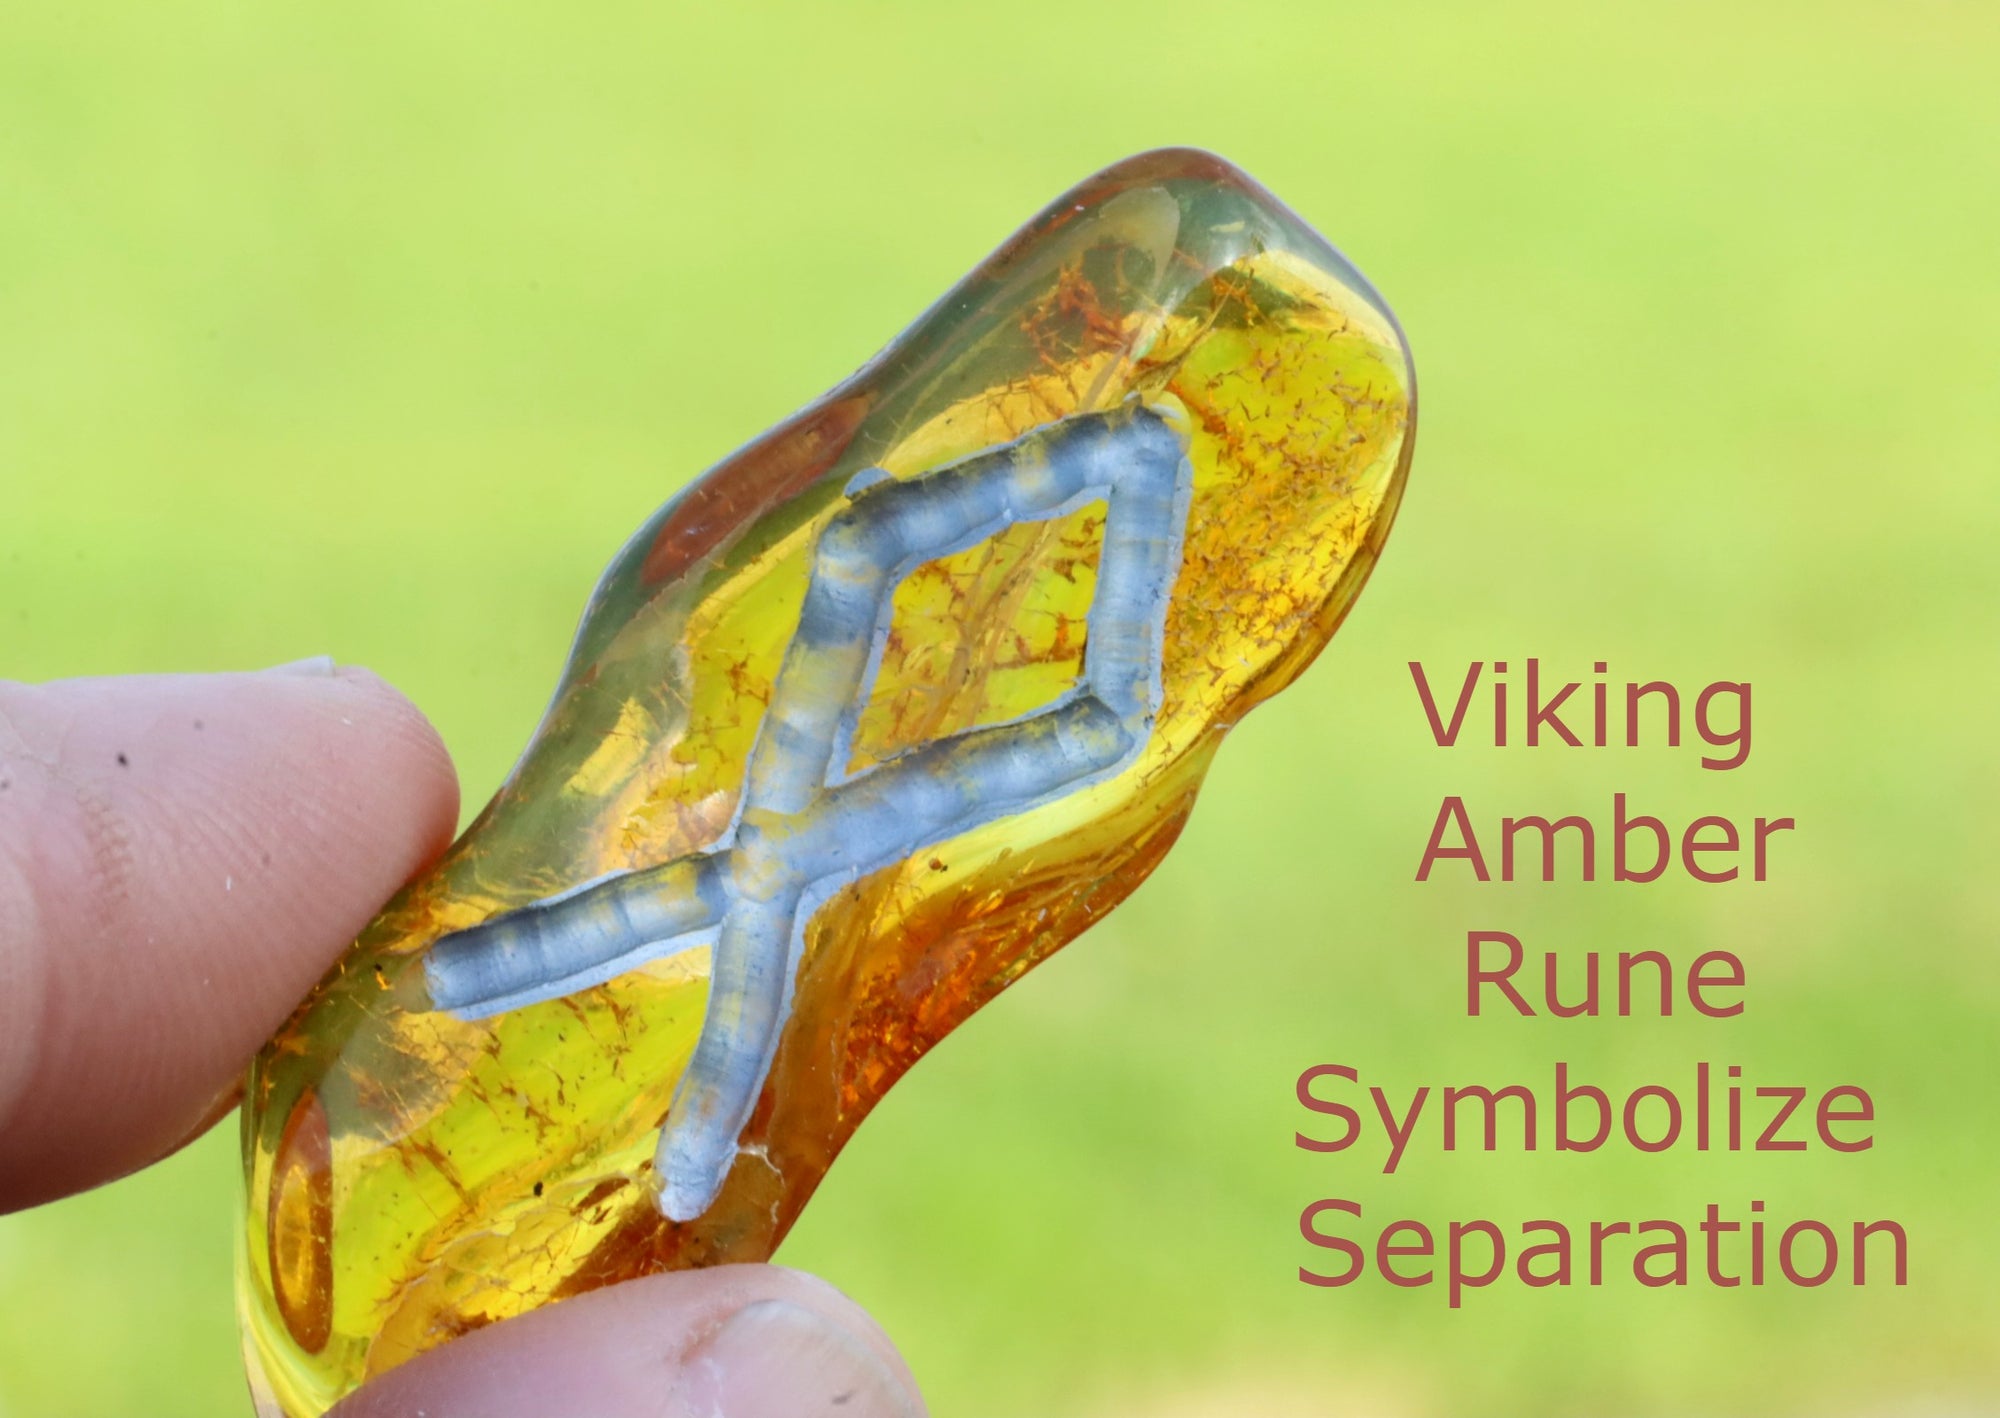 Viking Amber Rune Symbolize Separation.